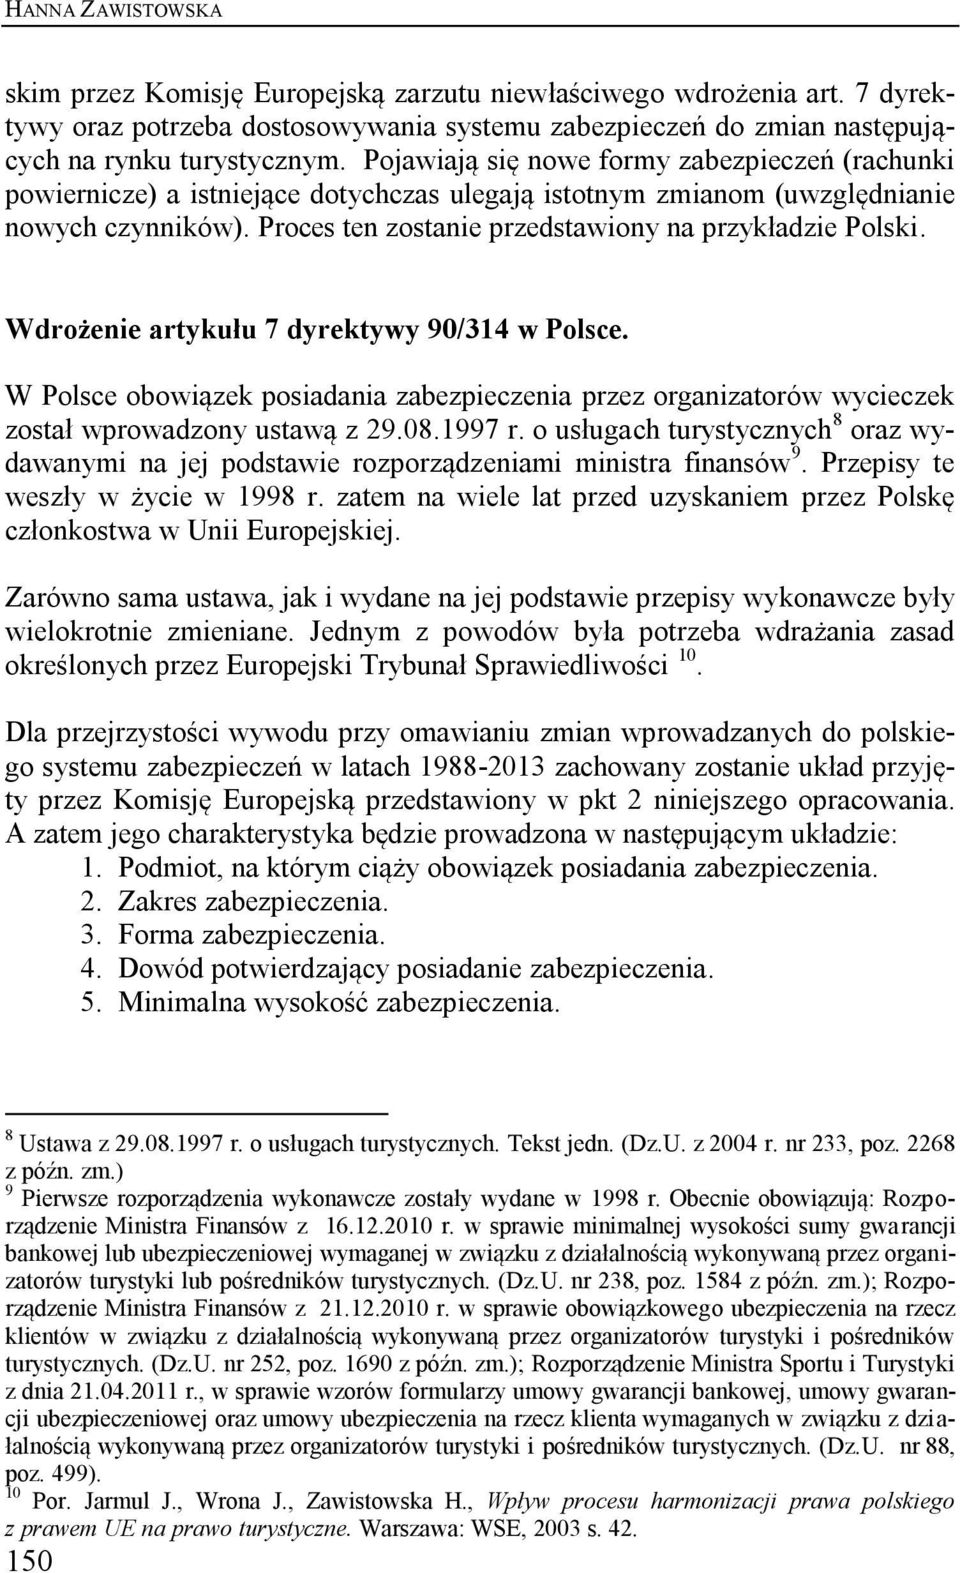 Wdrożenie artykułu 7 dyrektywy 90/314 w Polsce. W Polsce obowiązek posiadania zabezpieczenia przez organizatorów wycieczek został wprowadzony ustawą z 29.08.1997 r.